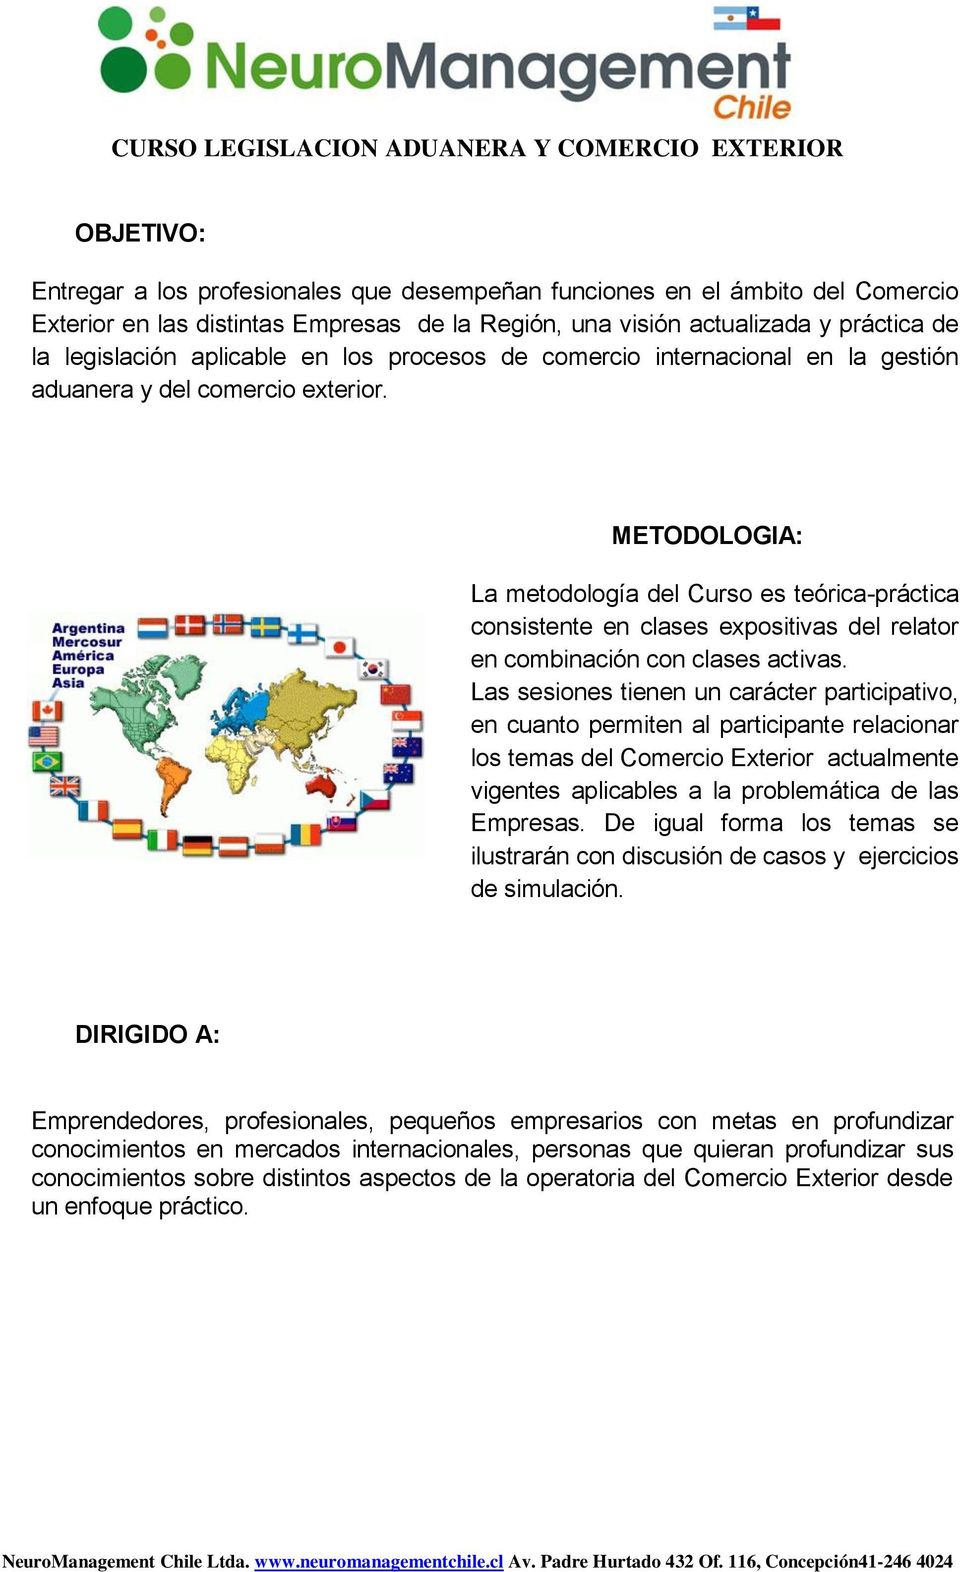 METODOLOGIA: La metodología del Curso es teórica-práctica consistente en clases expositivas del relator en combinación con clases activas.